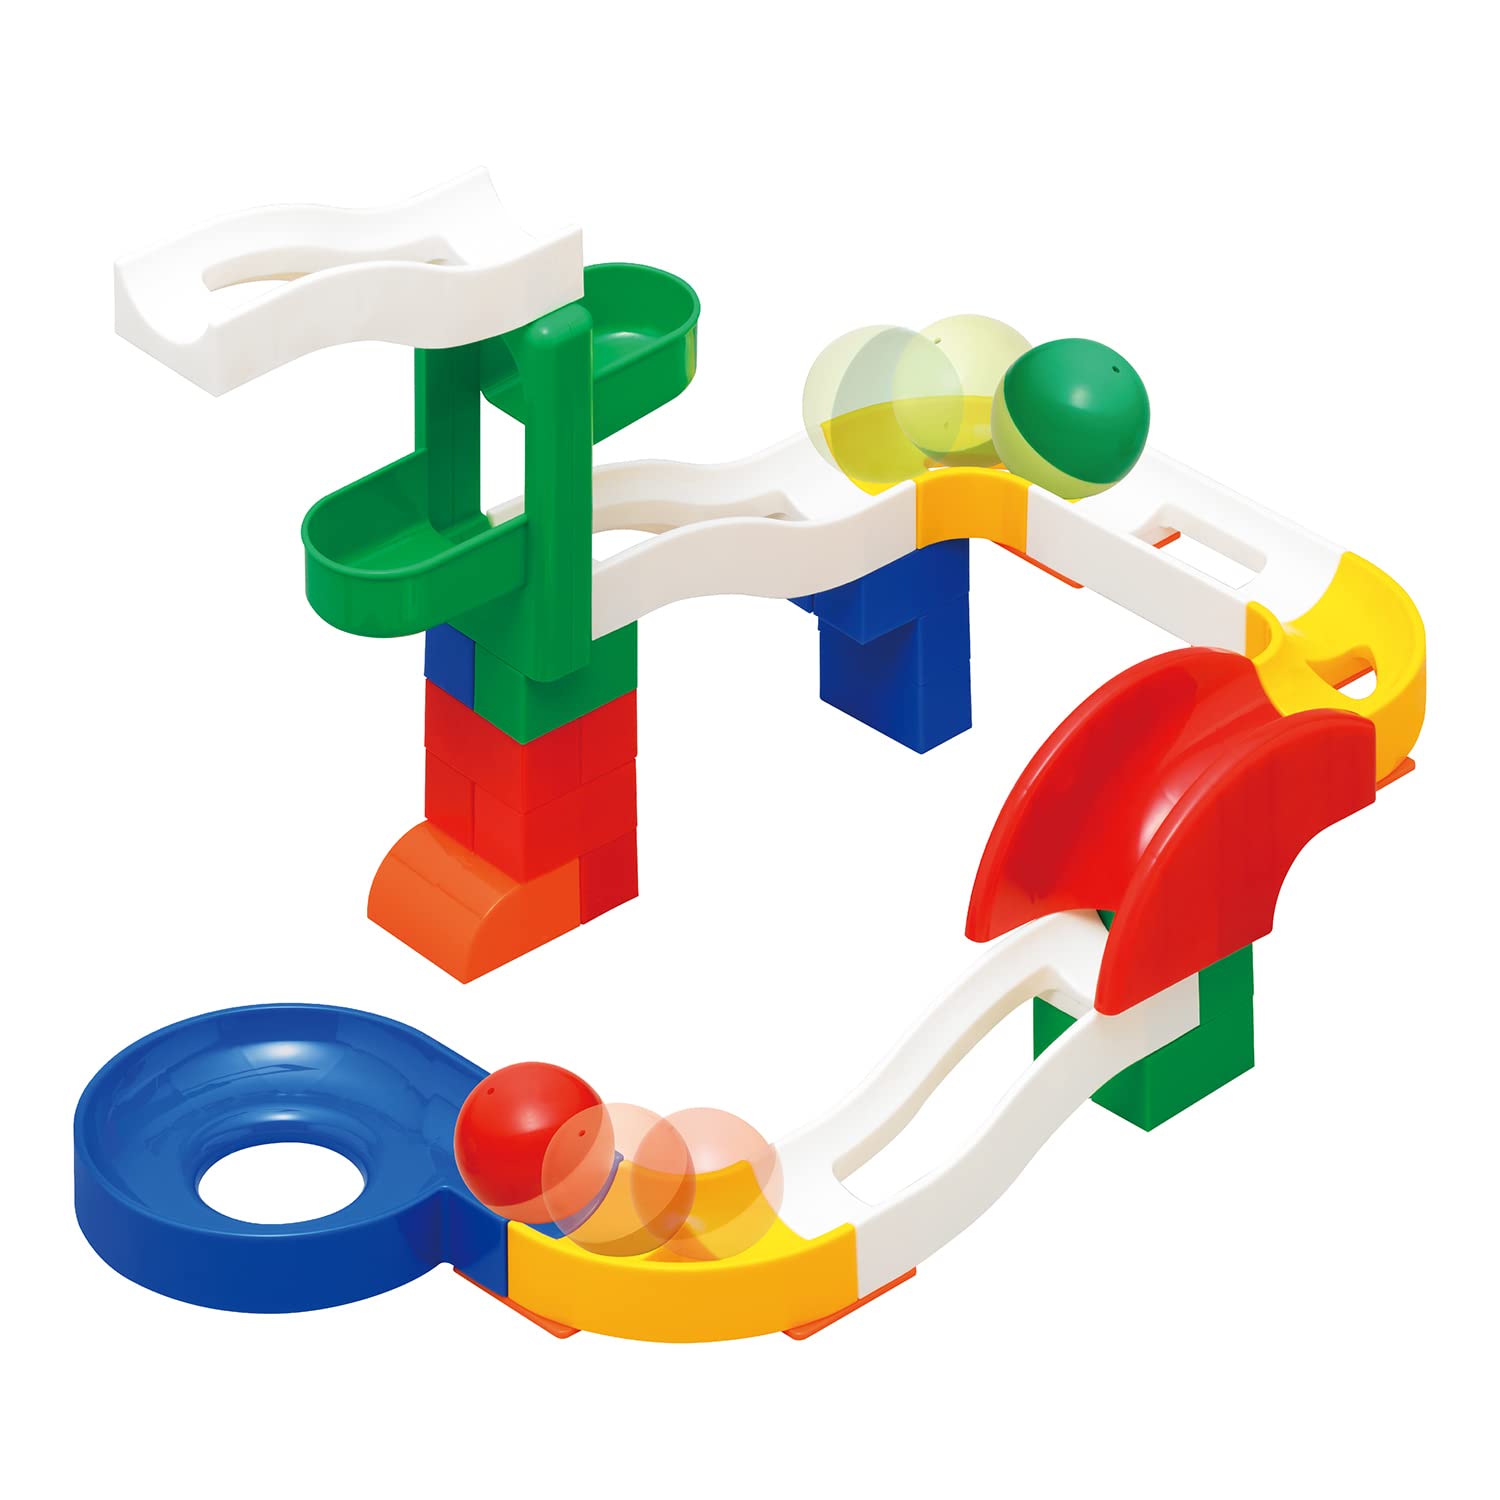 トイローヤル コロコロコースターS ギミックパーツ付き ( ブロック遊び / コロコロ遊び ) 知育玩具 パーツ ボールコースター おもちゃ